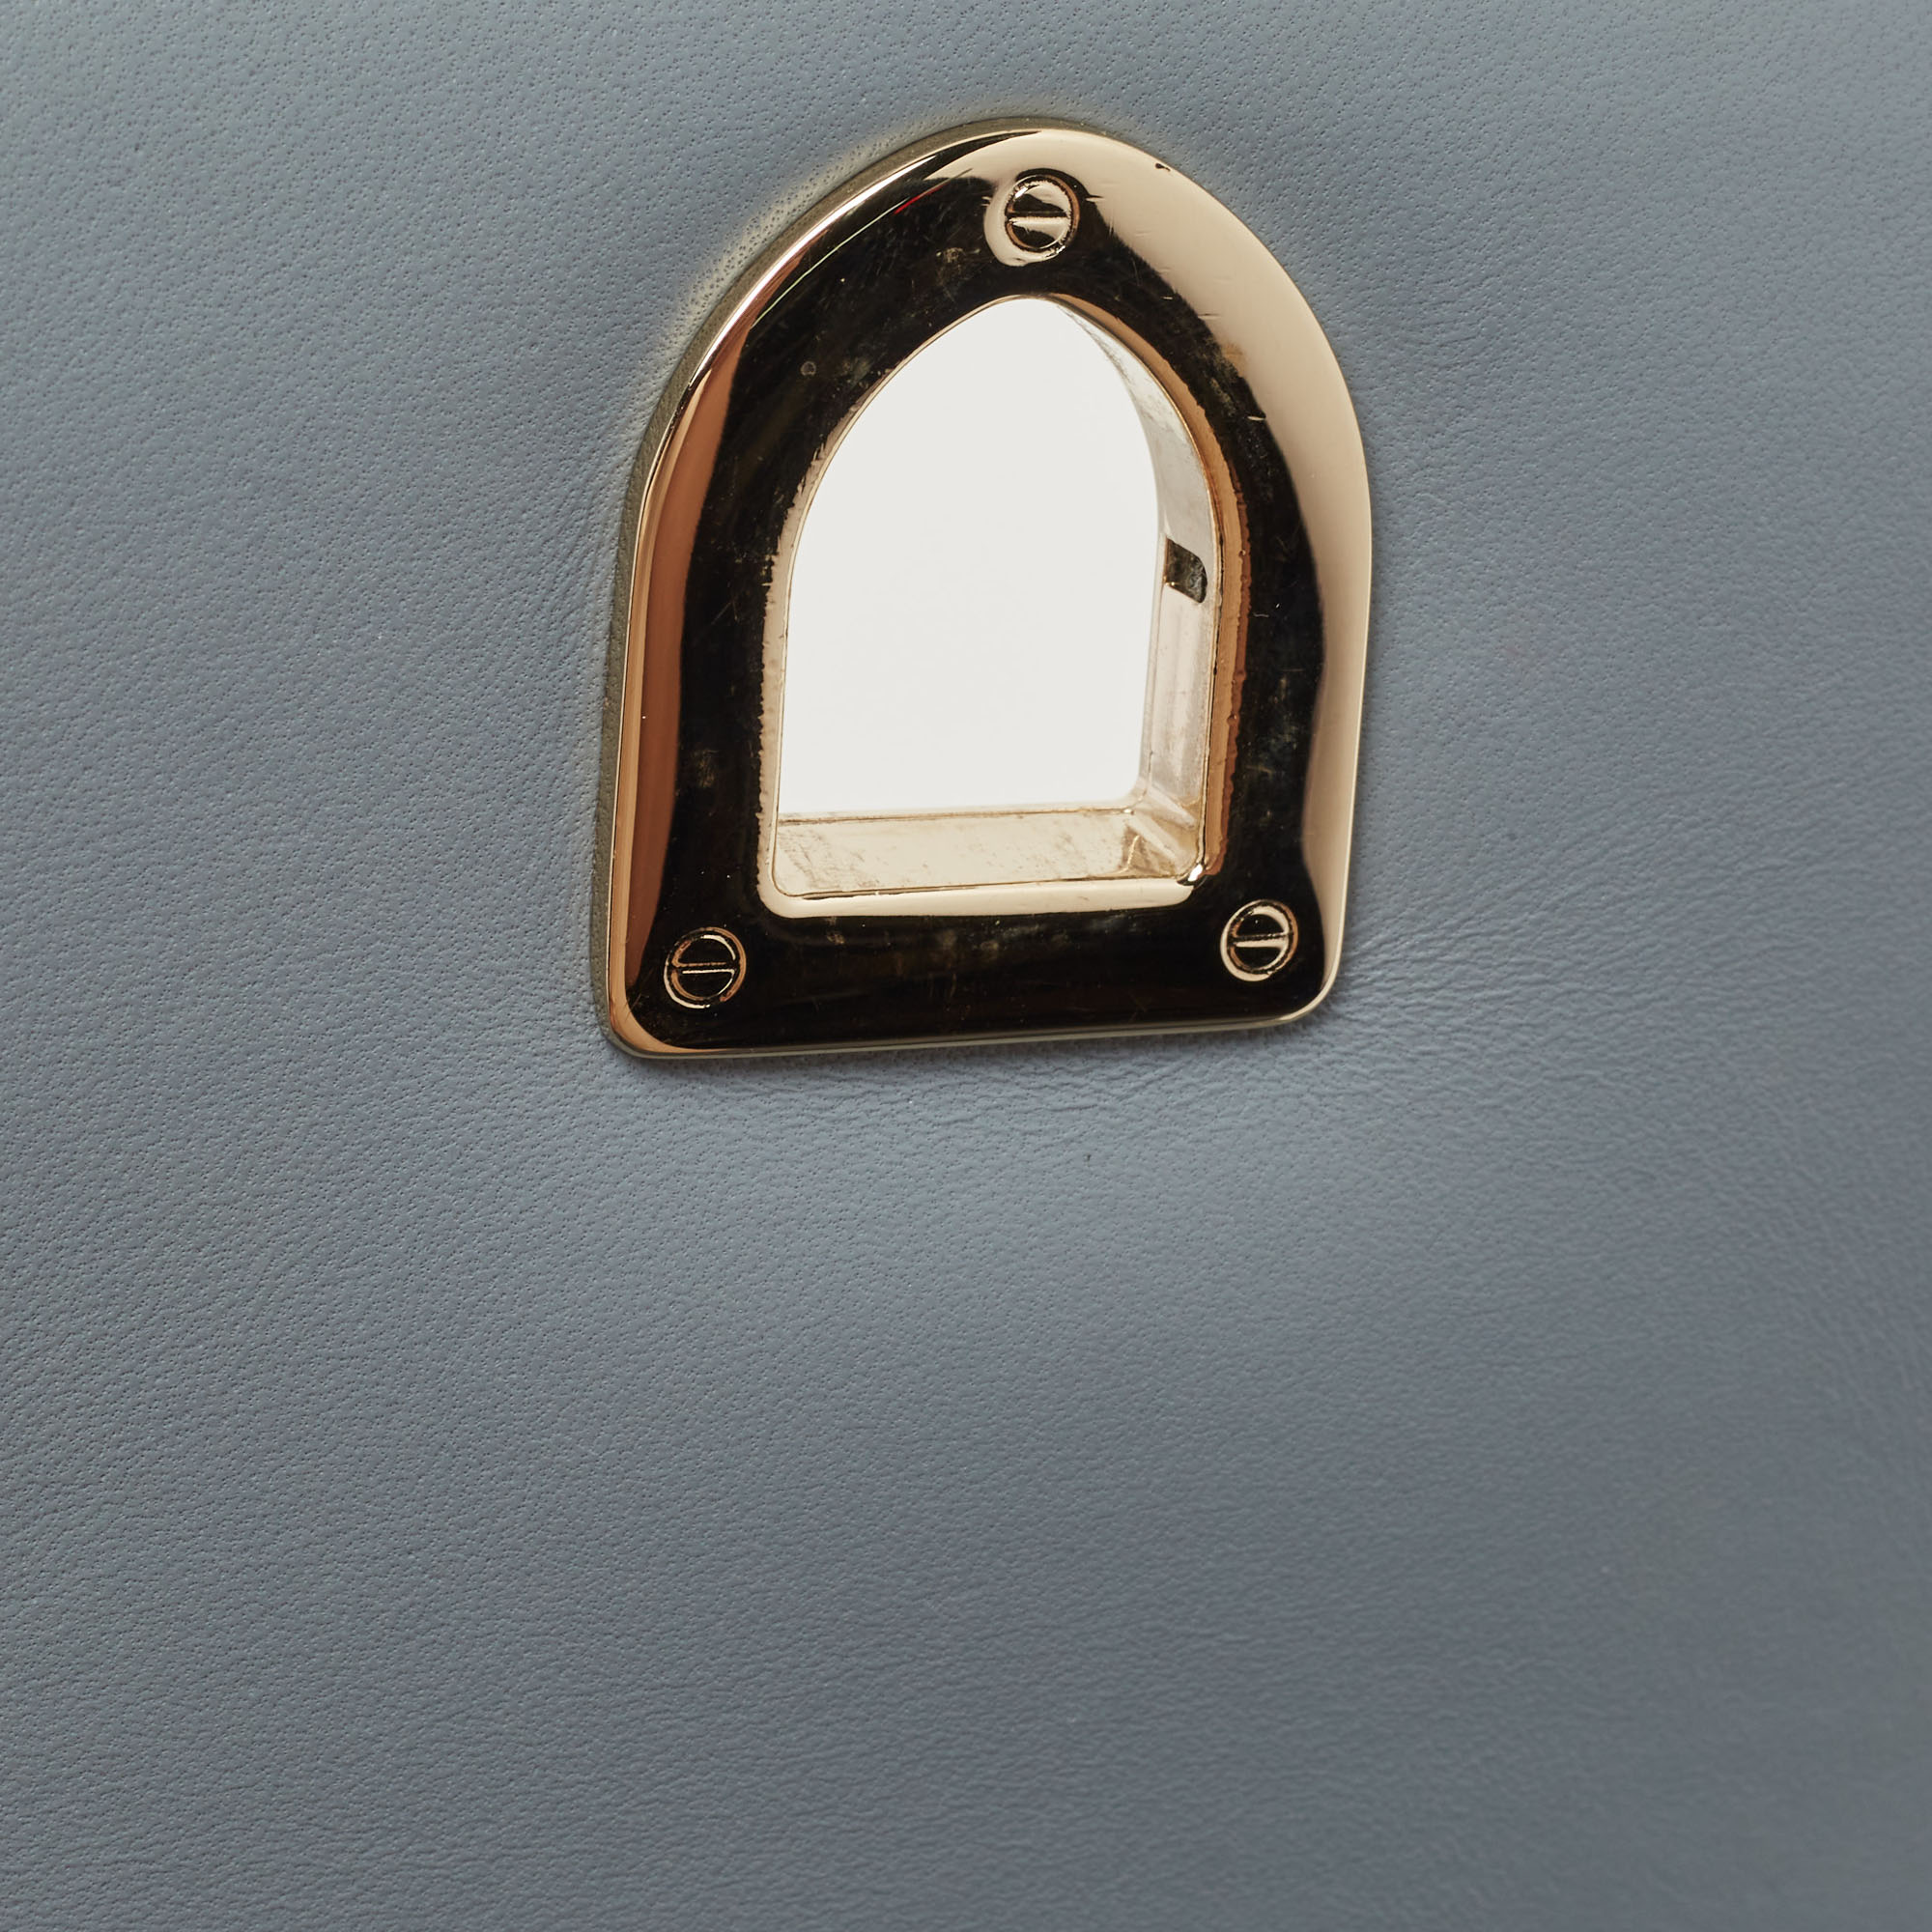 Dior Light Blue Soft Leather Small Diorama Shoulder Bag